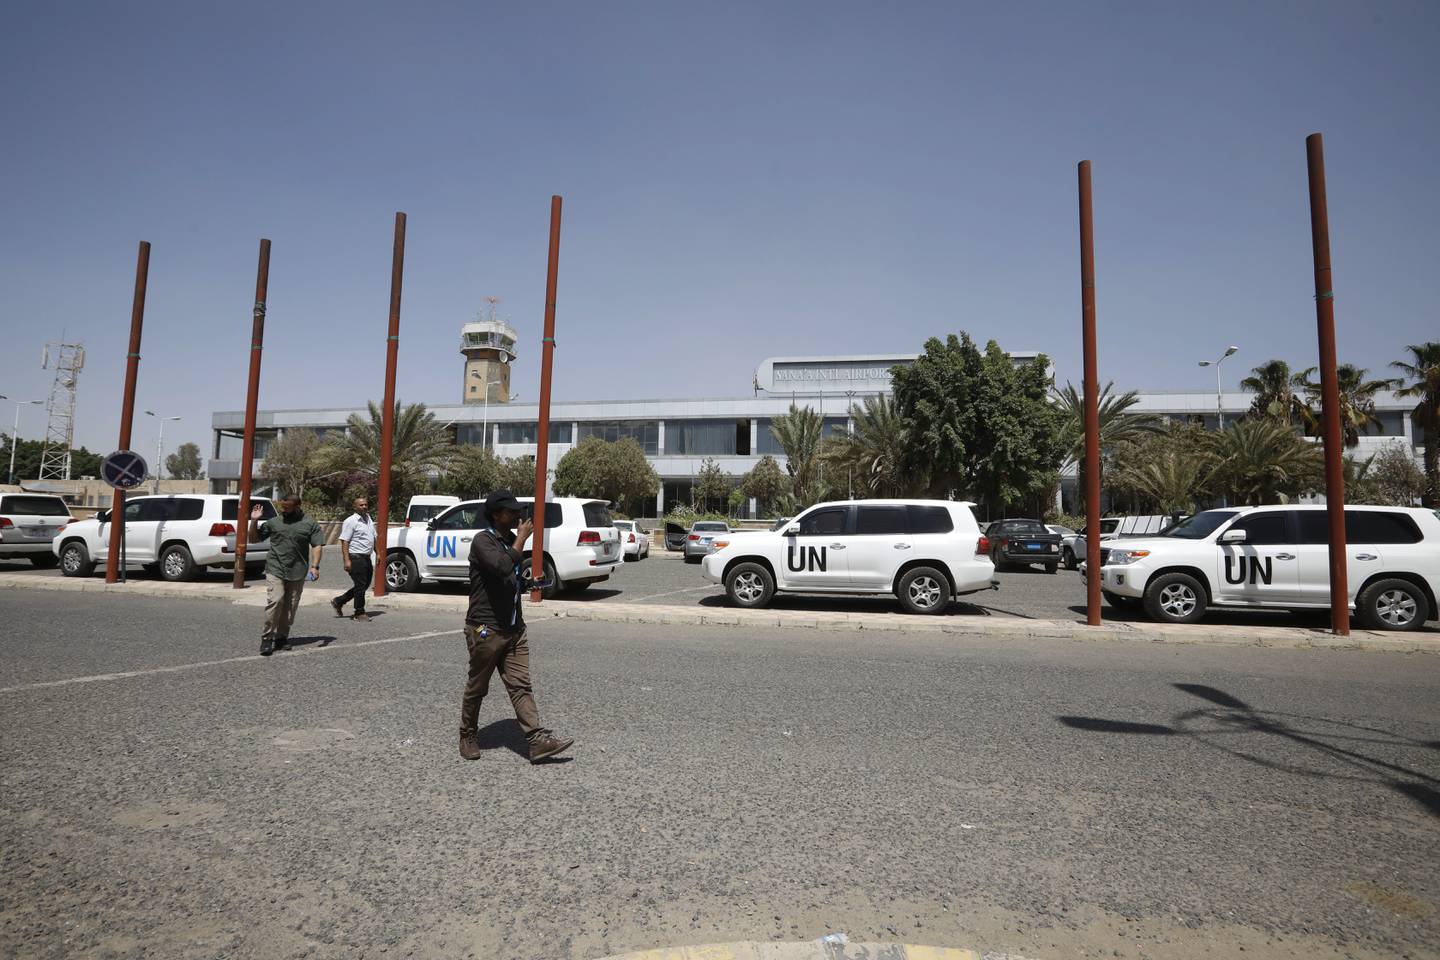 UN staff members walk past UN vehicles parking at SanaaΩ airport, in Sanaa, Yemen, 08 June 2022. EPA